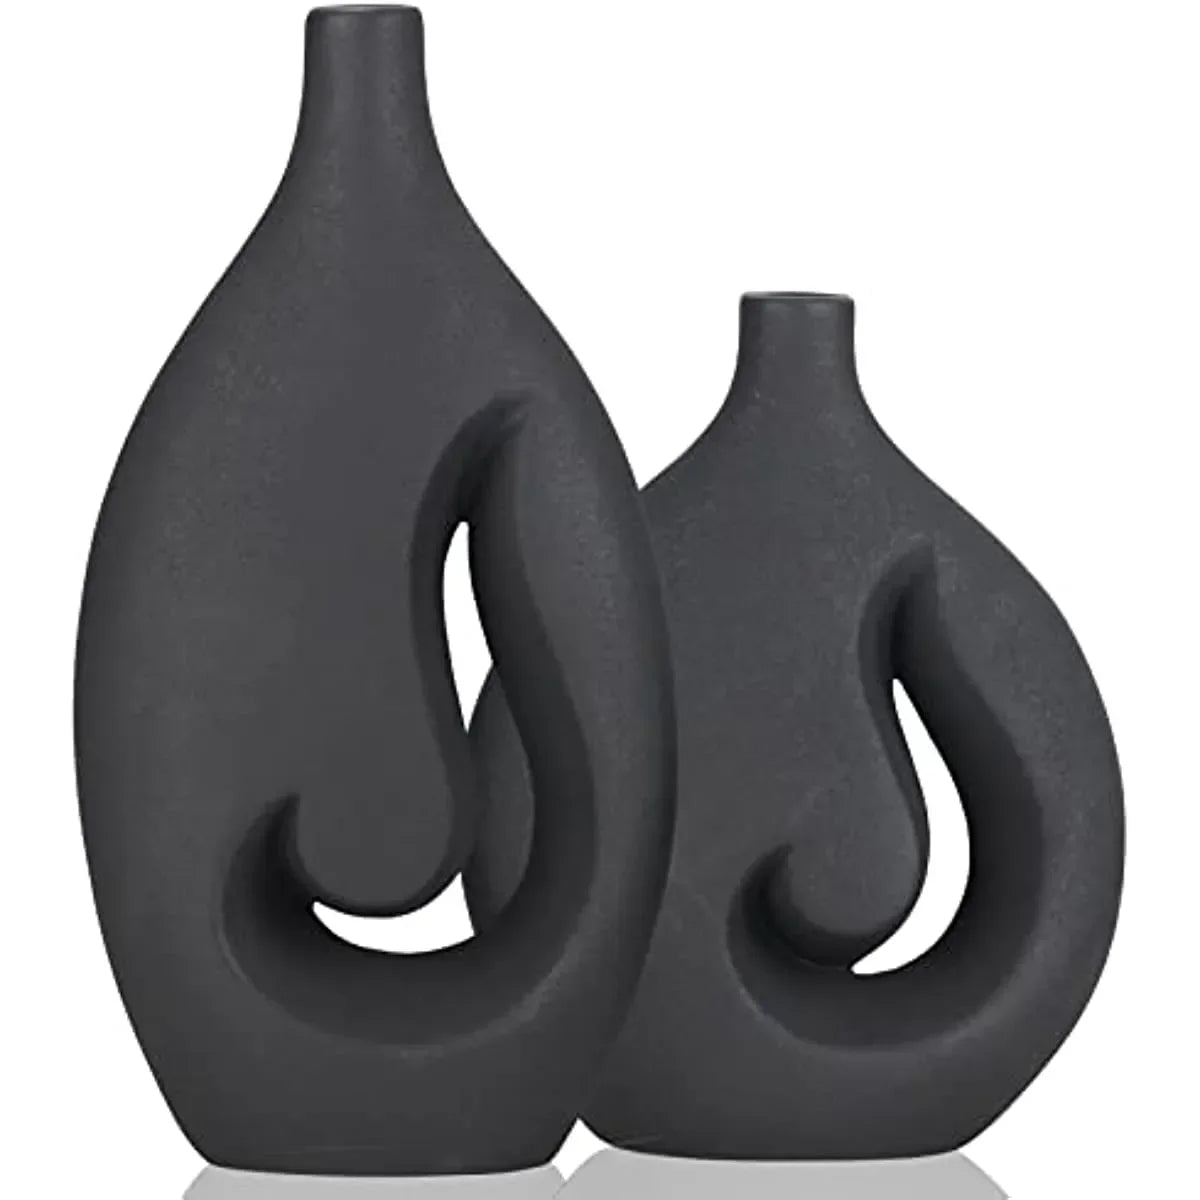 Zwarte keramische vlam holle vazen ​​set van 2 modern decoratief vaas middelpunt voor bruiloft eettafel feest woonkamer kantoor